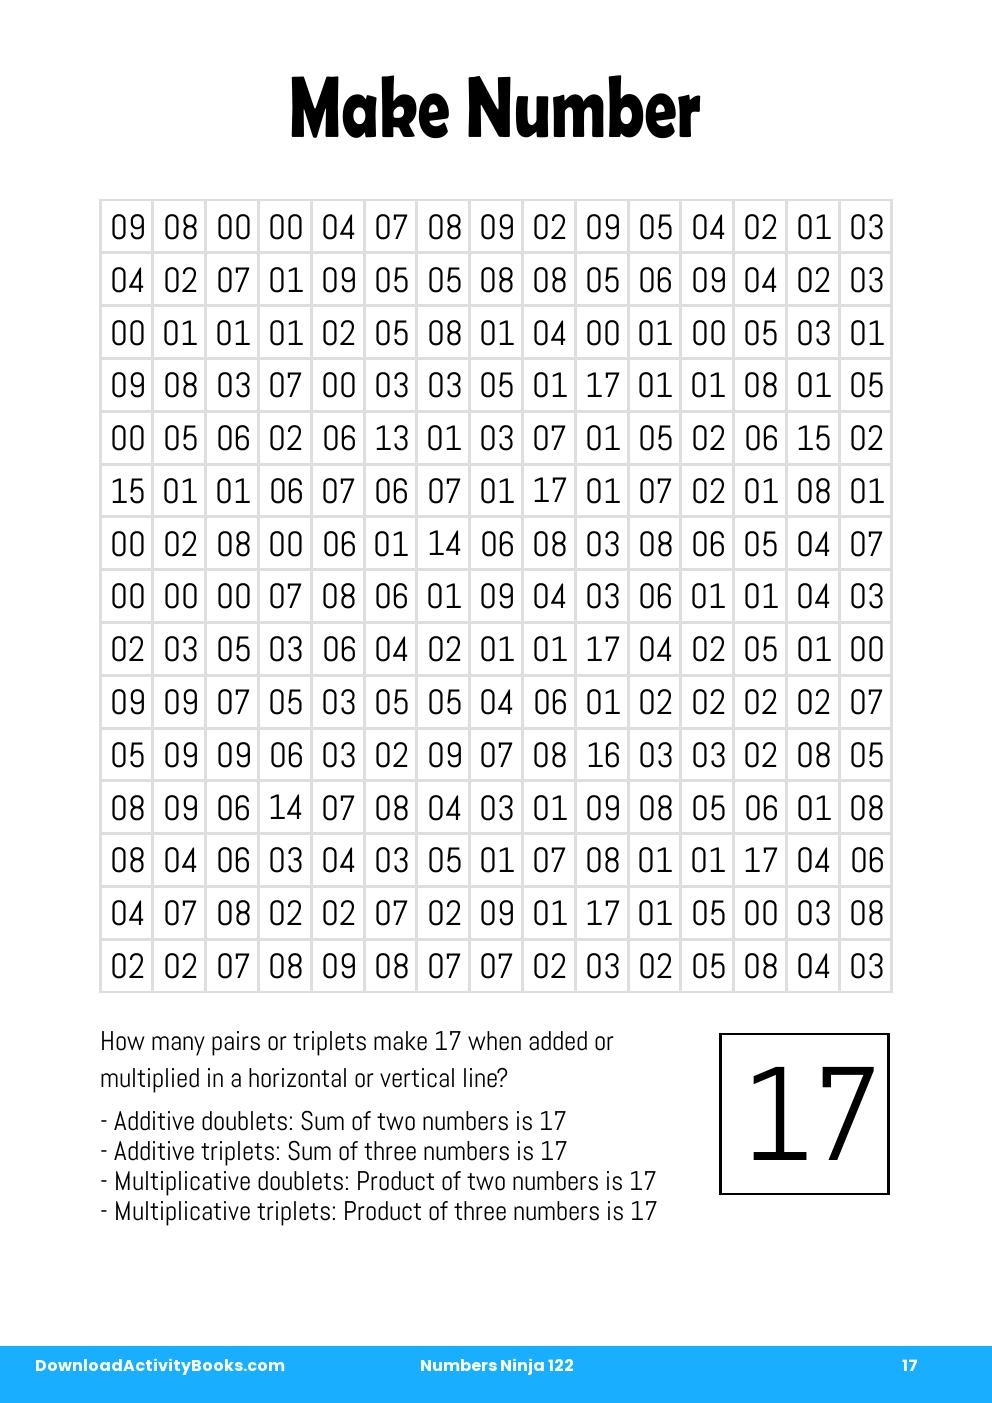 Make Number in Numbers Ninja 122